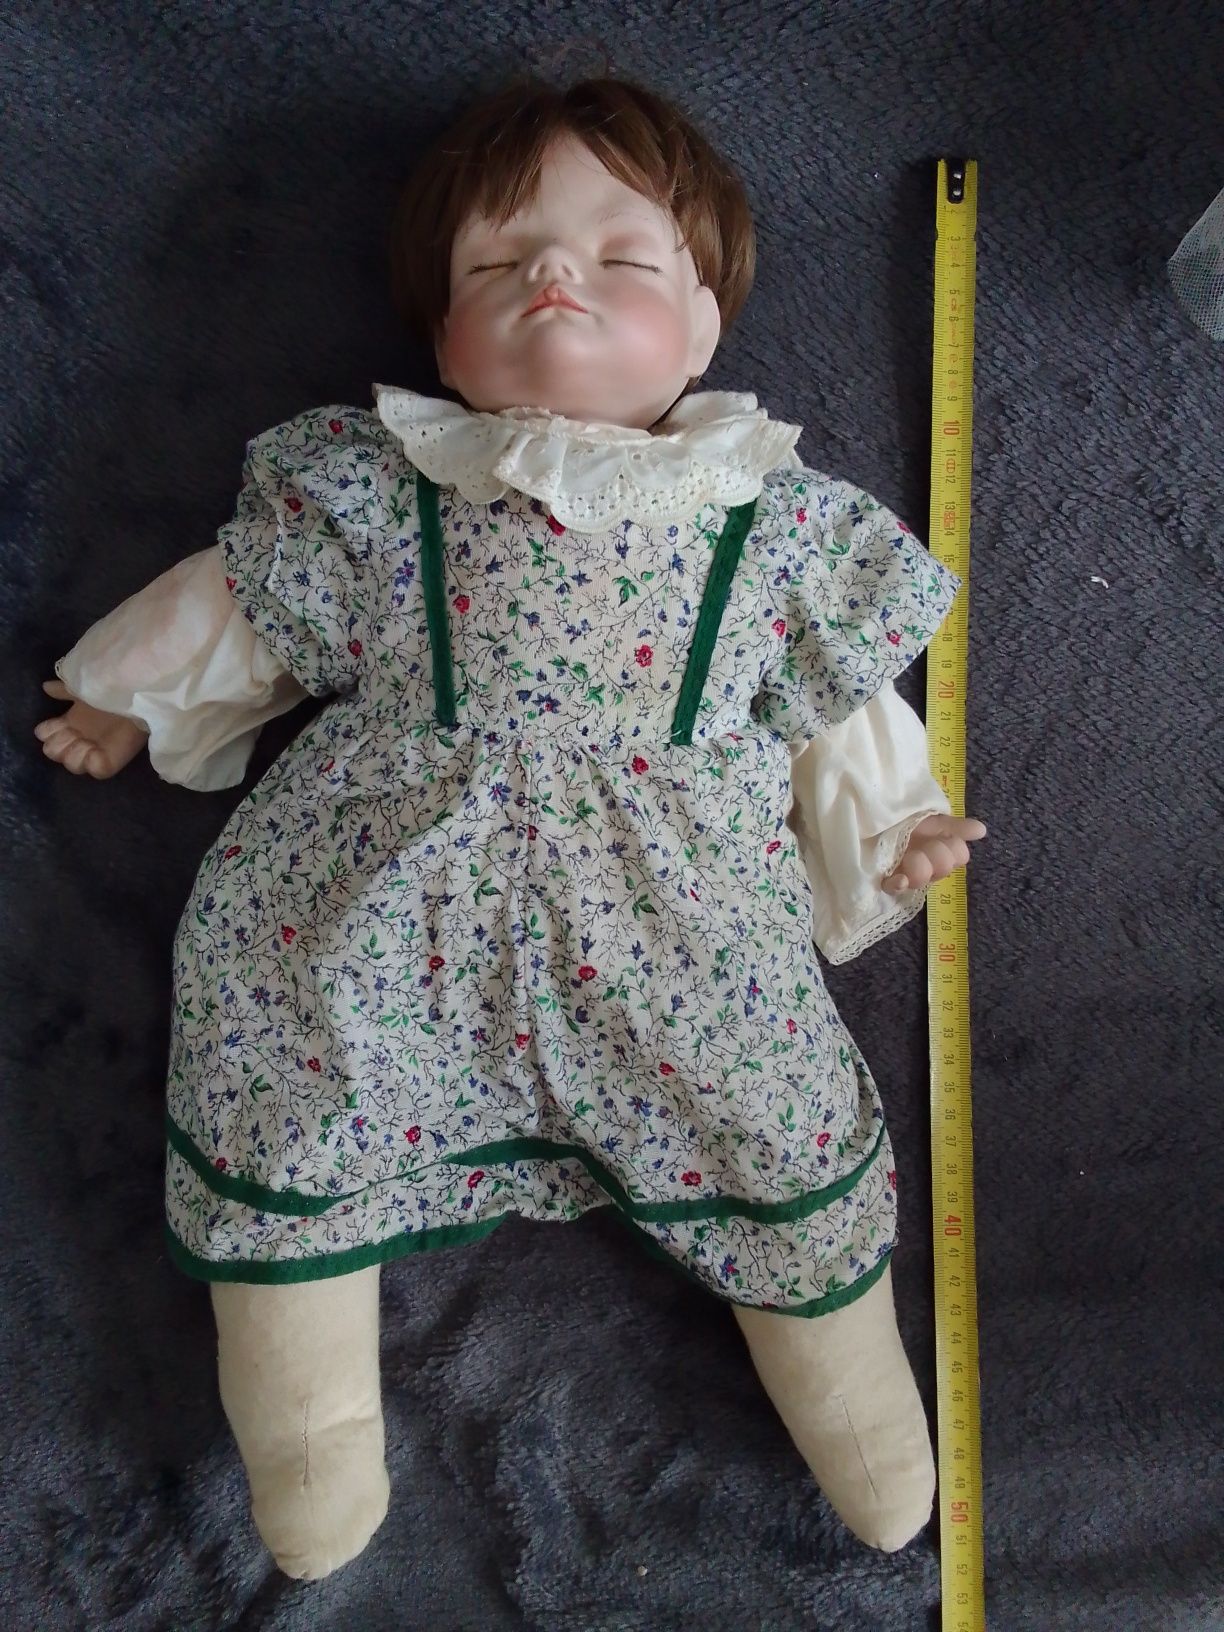 Porcelanowa lalka ok. 50 cm bo as b.ciezka realistyczne rysy